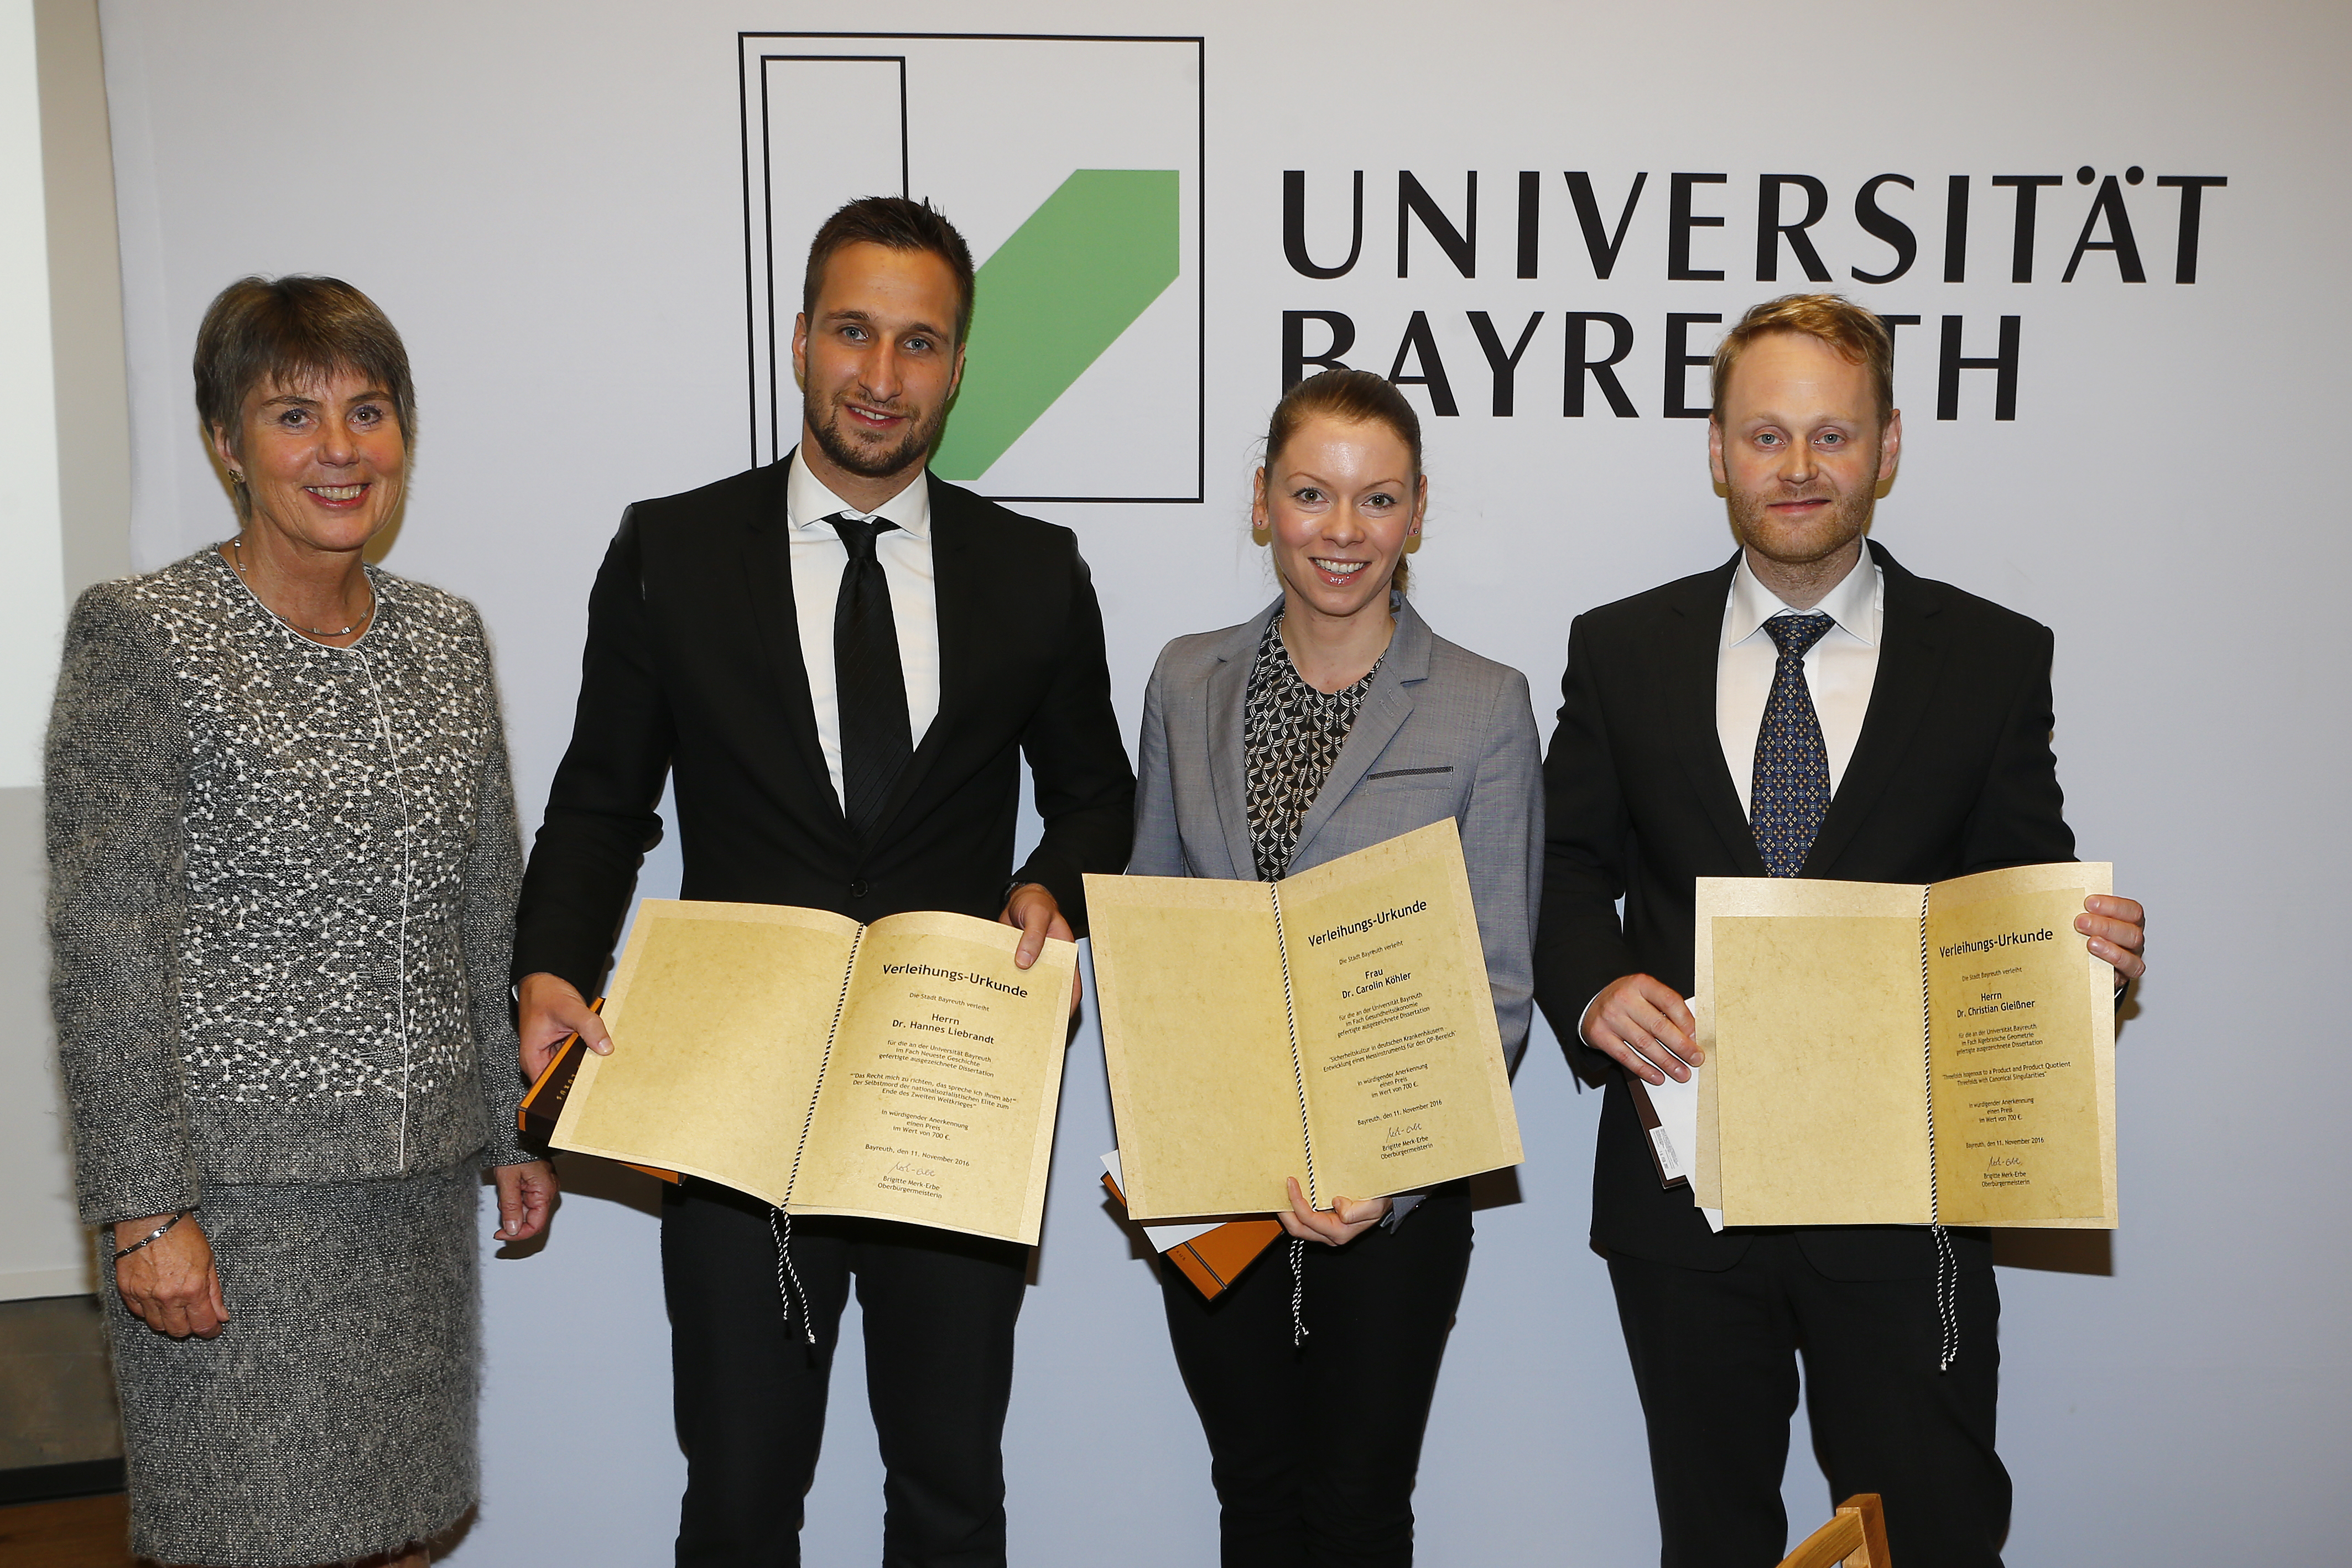 Verleihung der Preise der Stadt Bayreuth an Dr. Christian Gleißner, Dr. Carolin Köhler und Dr. Hannes Liebrandt durch Brigitte Merk-Erbe